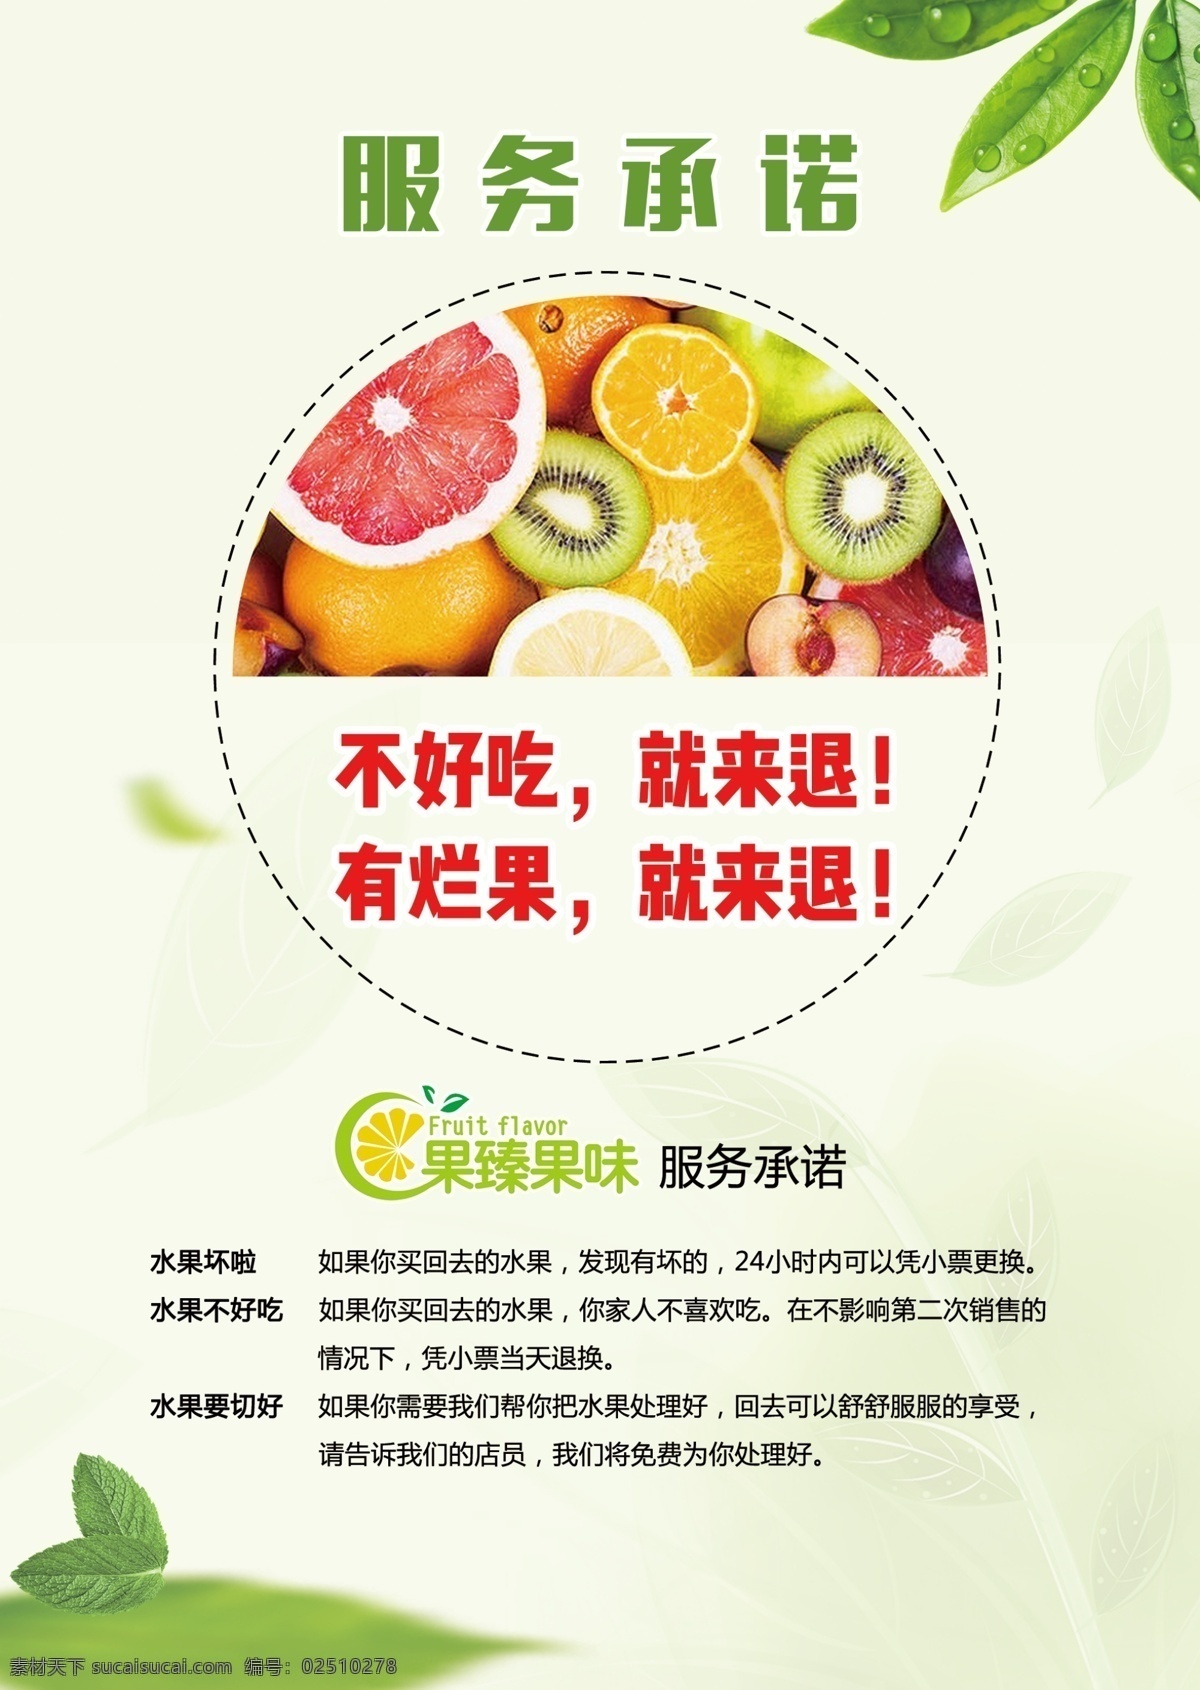 水果服务承诺 水果 服务承诺 果味果臻 绿色 果汁